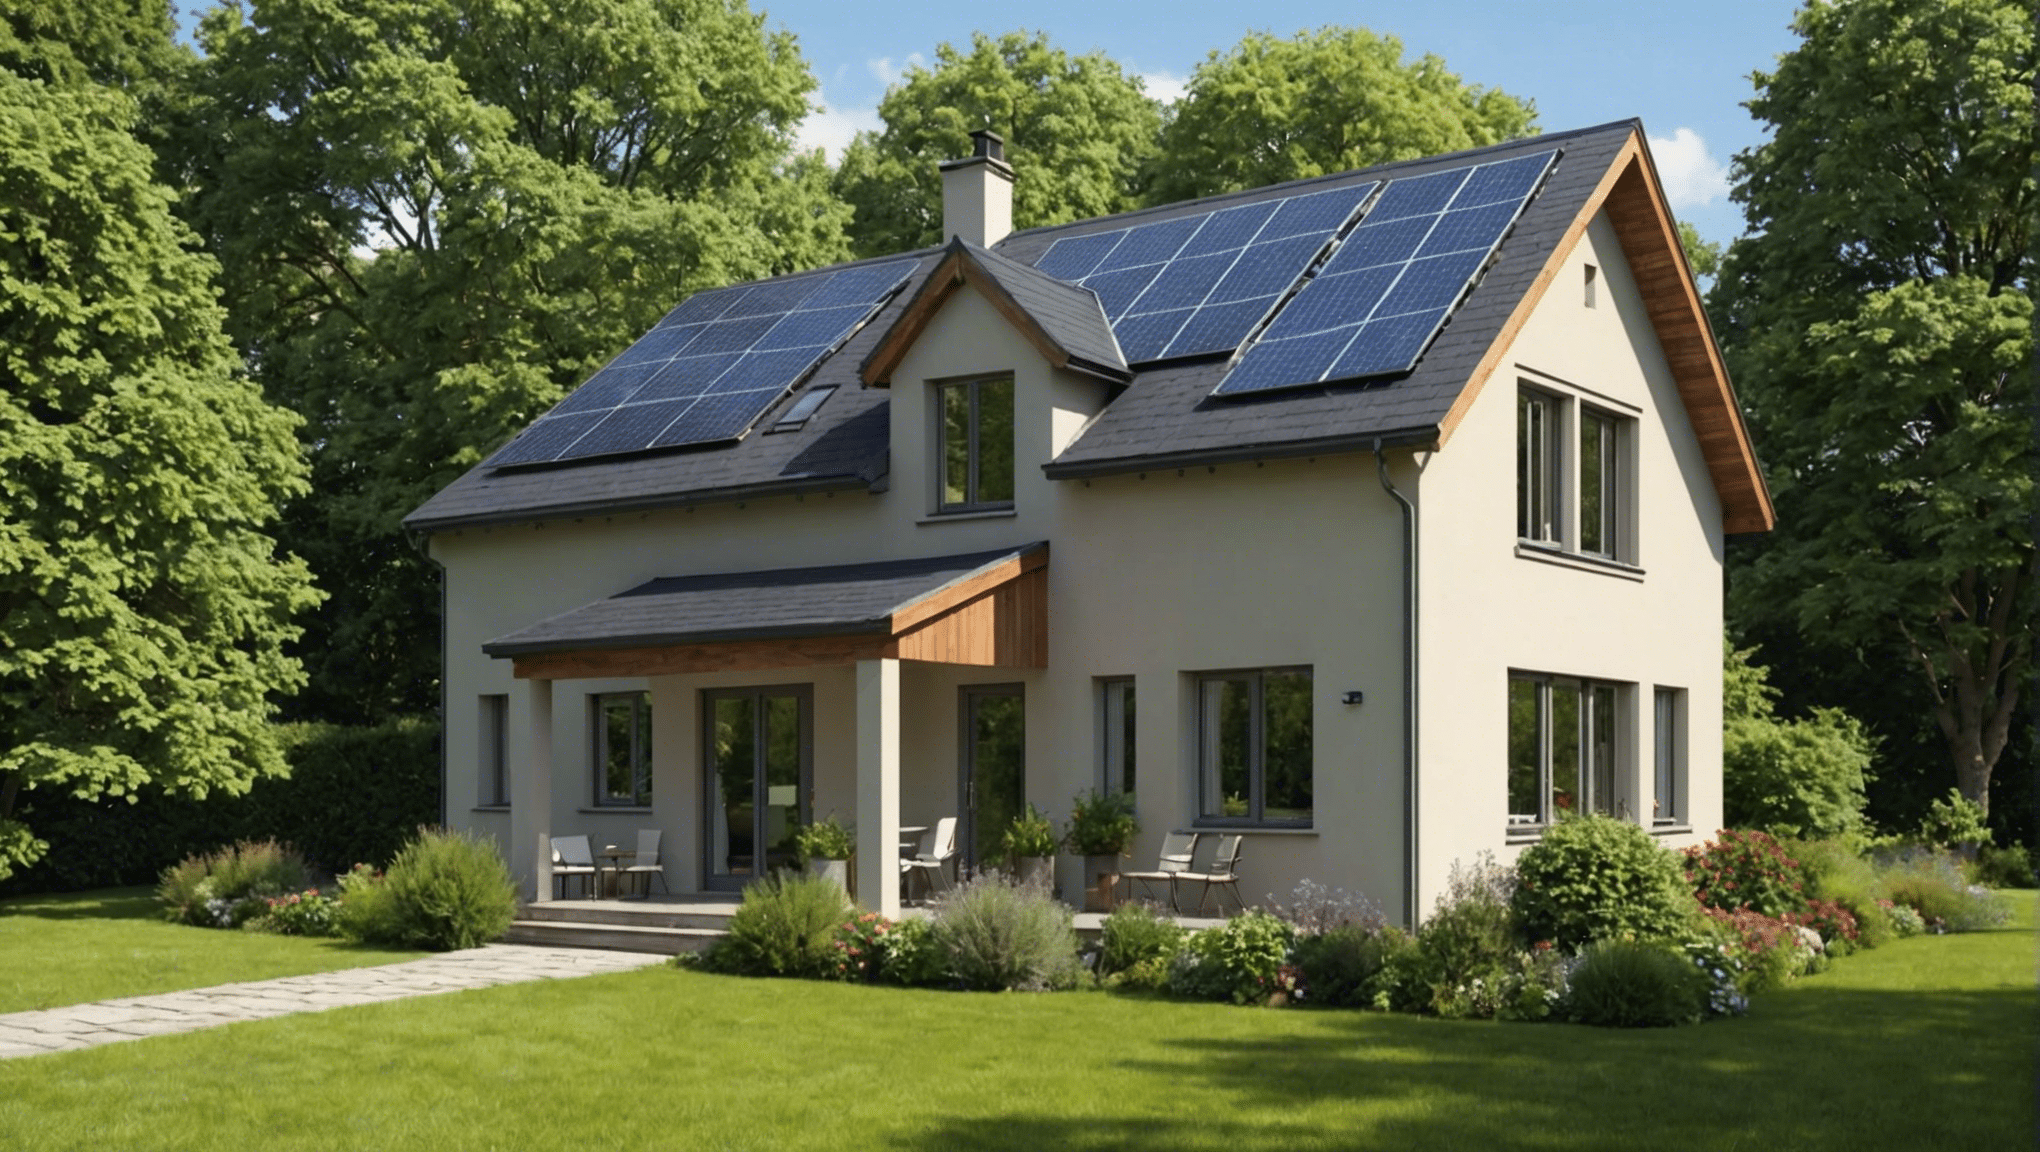 découvrez comment choisir la meilleure classe énergétique pour votre maison et économiser sur vos factures d'énergie avec nos conseils pratiques.